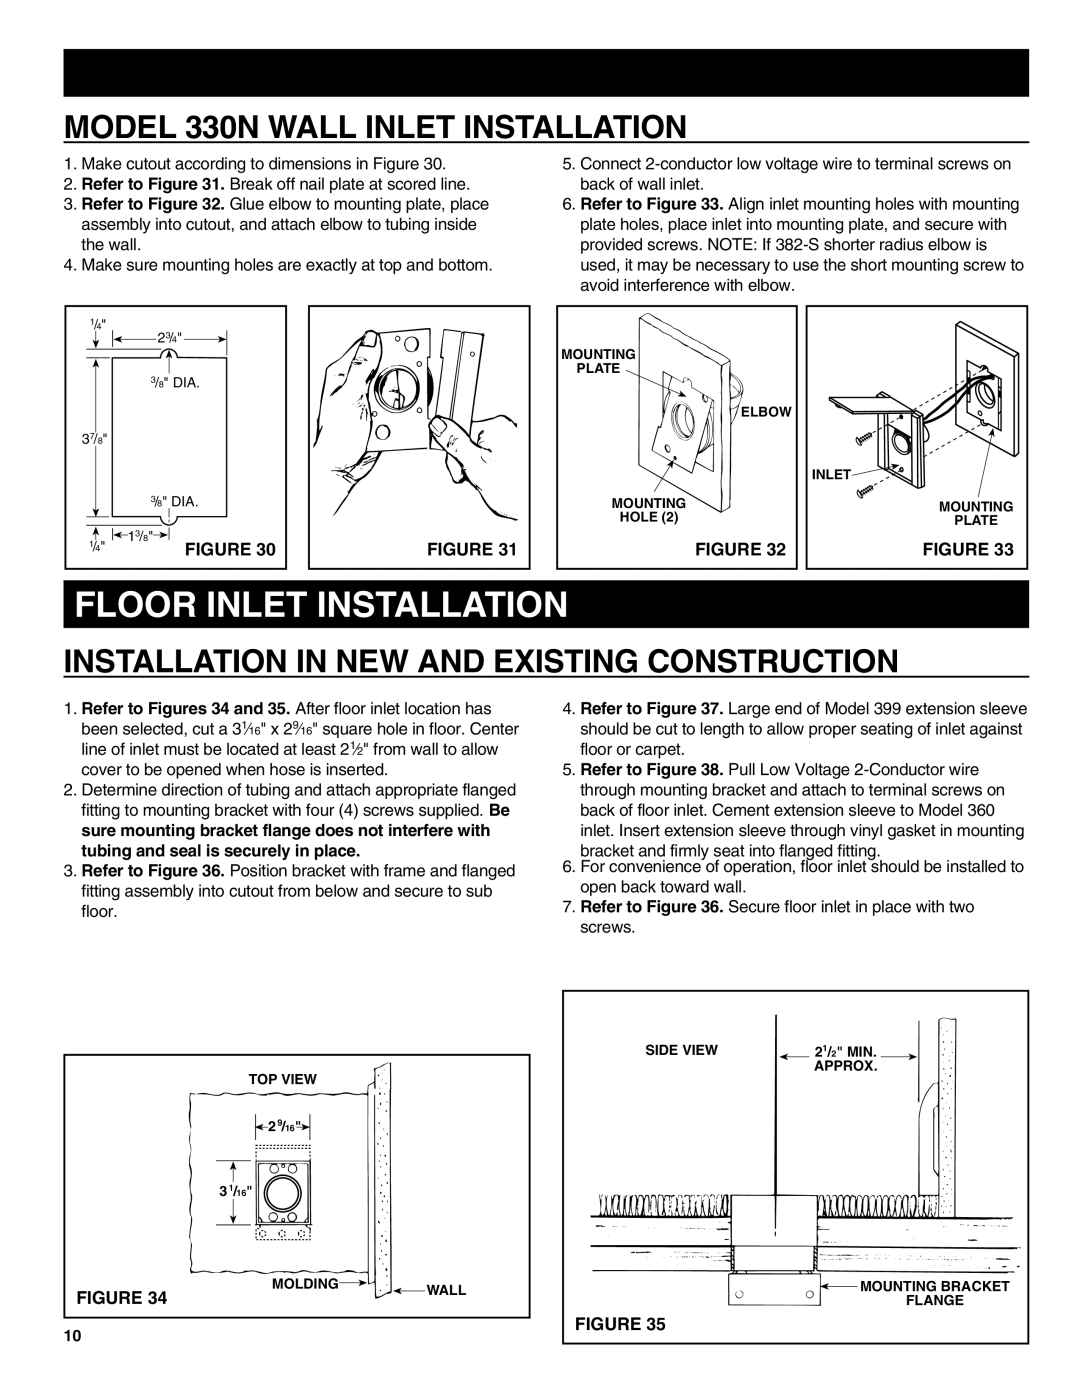 NuTone CV352 Floor Inlet Installation, MODEL 330N WALL INLET INSTALLATION, Installation In New And Existing Construction 